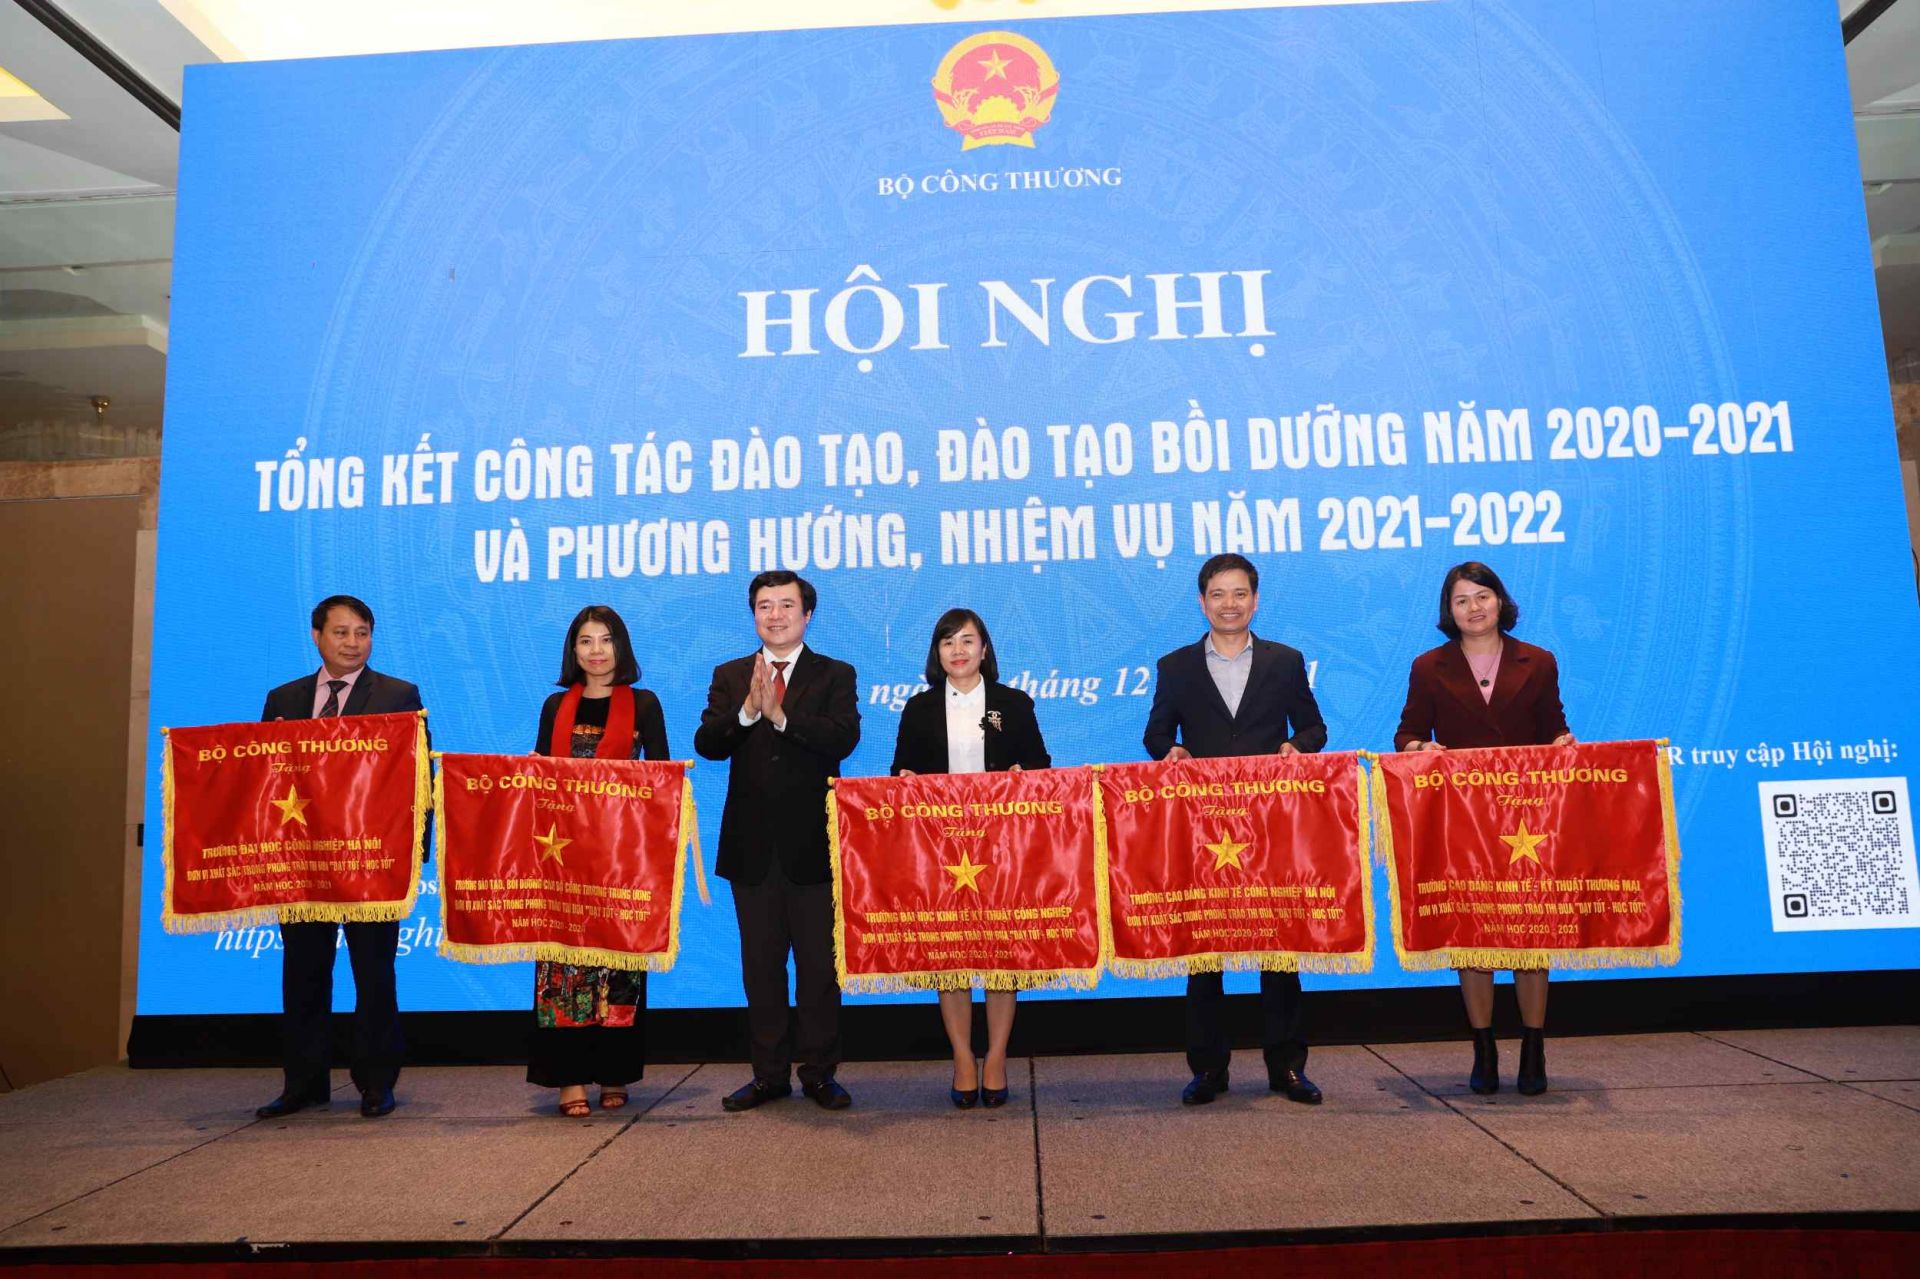 Thứ trưởng Nguyễn Sinh Nhật Tân trao cờ thi đua của Bộ trưởng Bộ Công Thương cho các trường có thành tích xuất sắc trong năm học 2020-2021